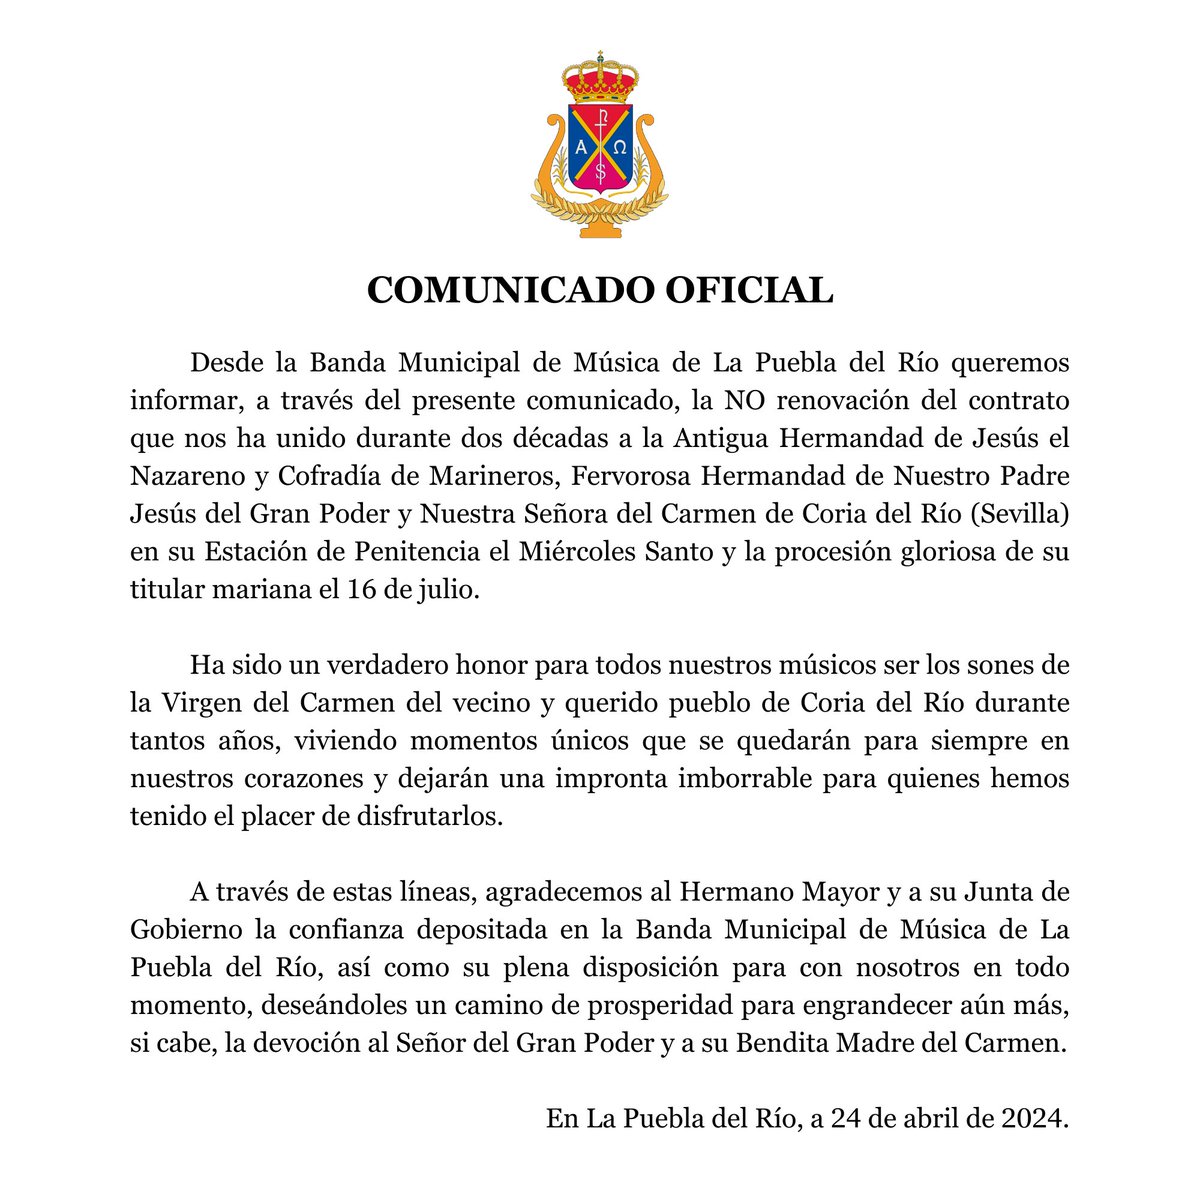 📣 Comunicado oficial de la Banda Municipal de Música de La Puebla del Río Miércoles Santo | @HdadGPoderCoria